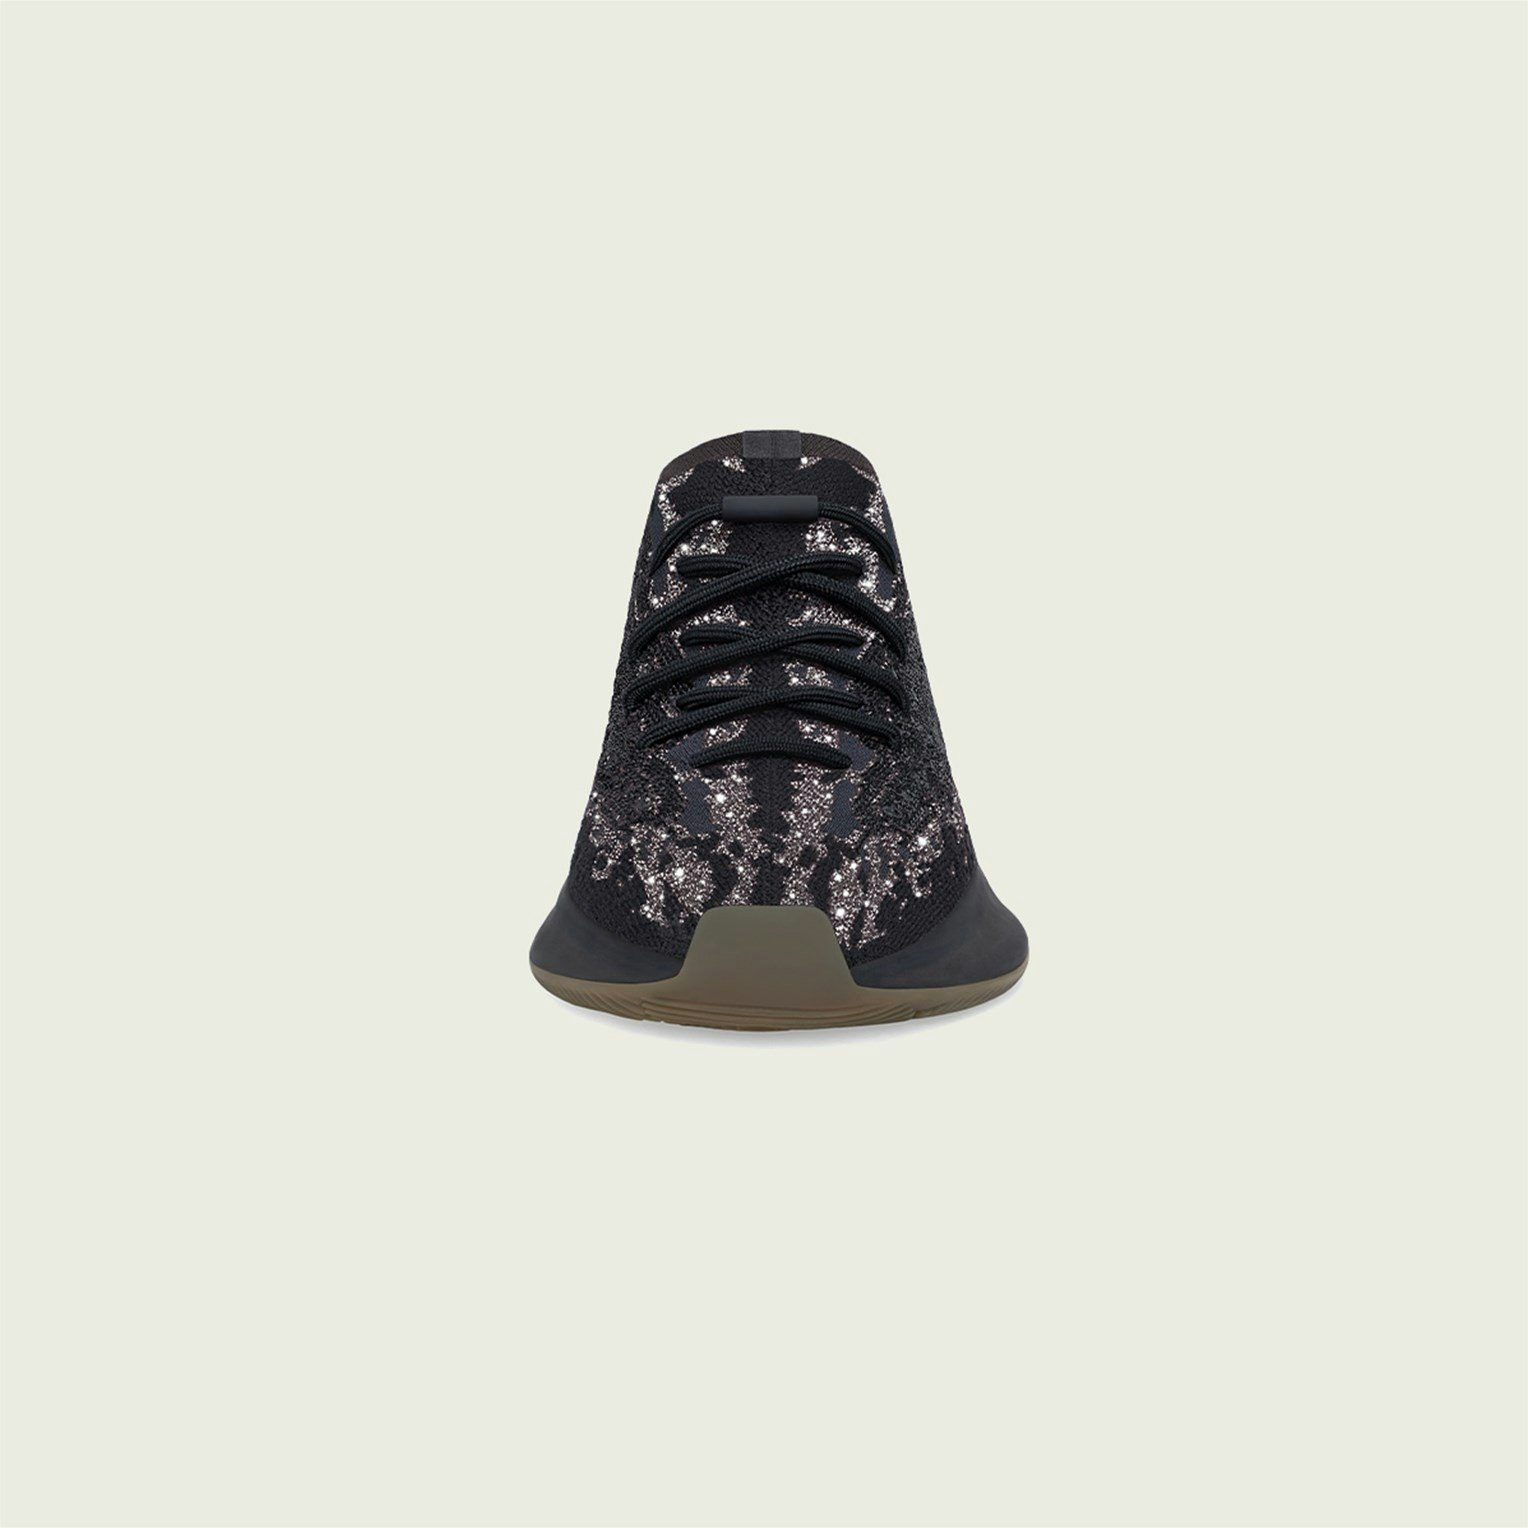 adidas Yeezy Boost 380 “Onyx Reflective”